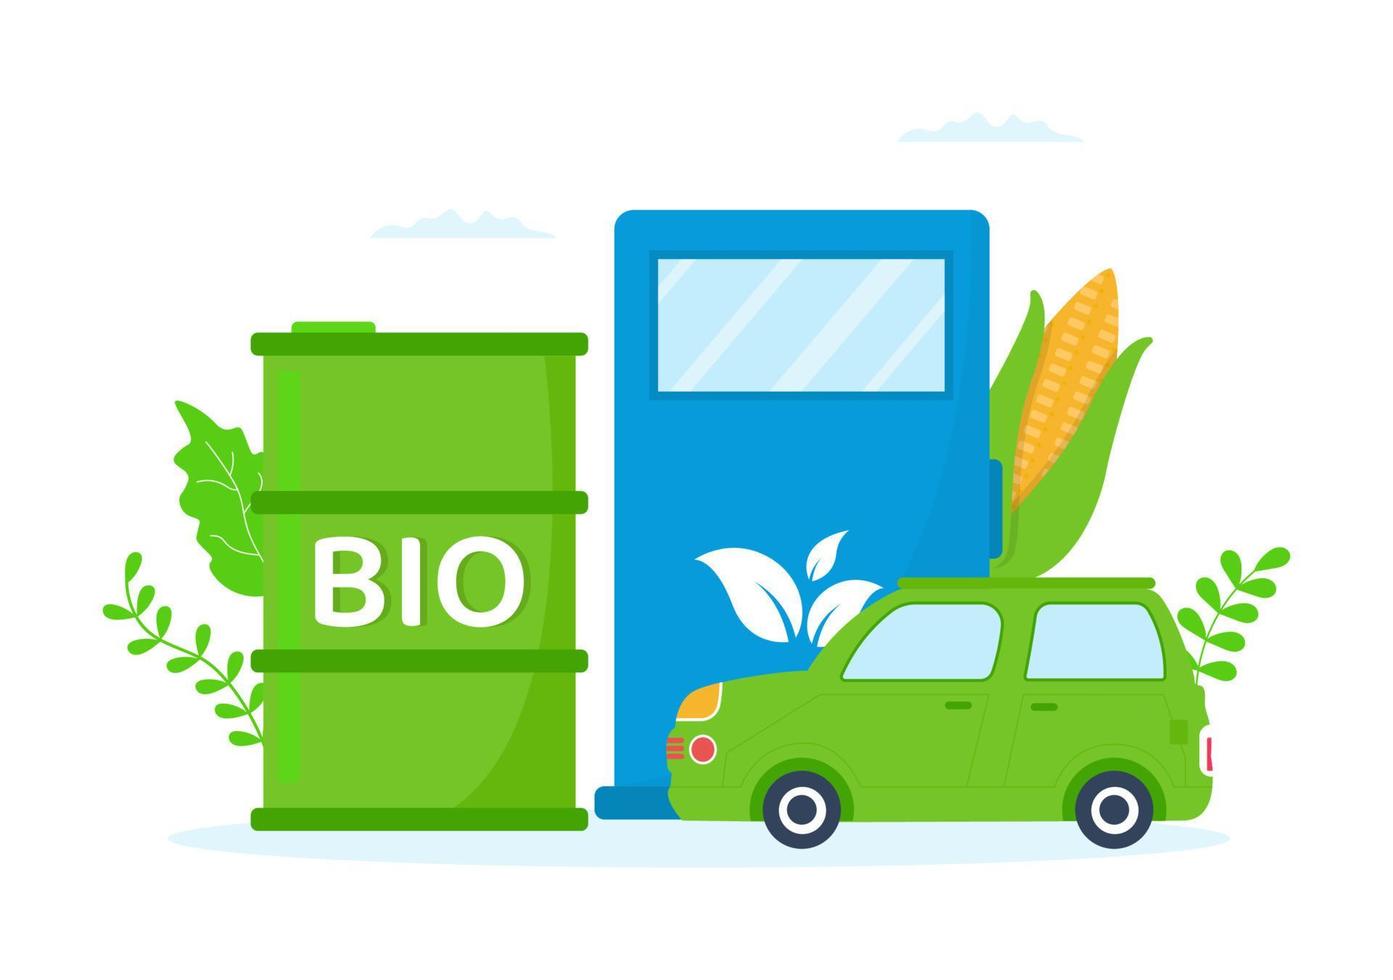 ciclo de vida del biocombustible de materiales naturales y plantas con barriles verdes o energía de producción de biogás en dibujos animados planos dibujados a mano ilustración de plantillas vector